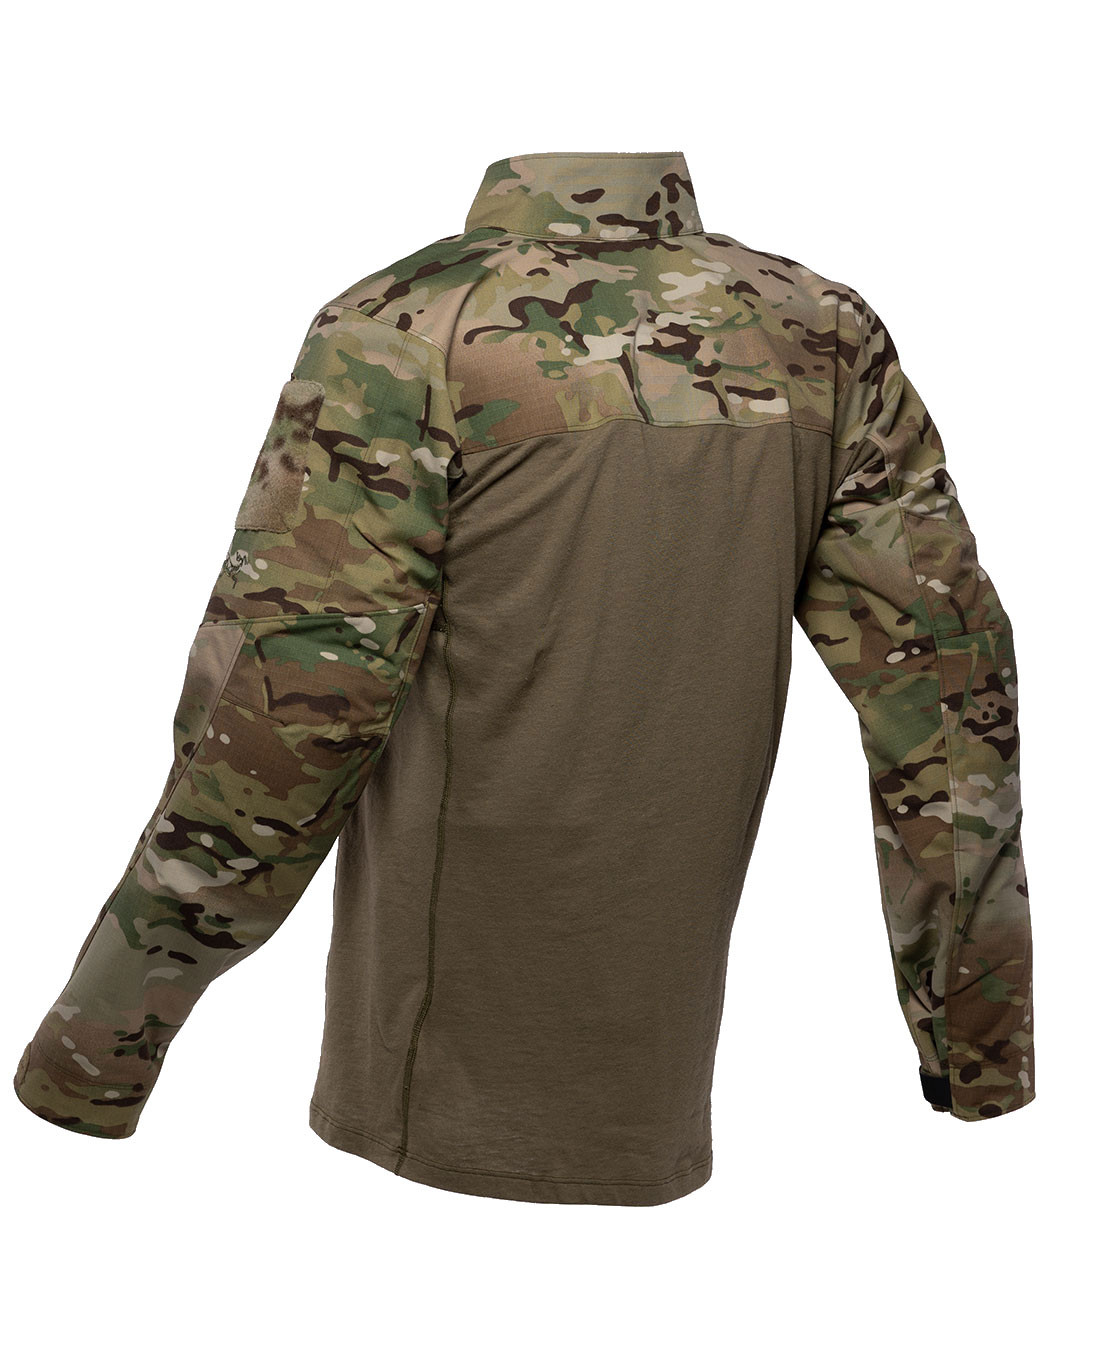 Arc'teryx LEAF Assault Shirt AR Men's (Gen2) Multicam - 23557.Multicam